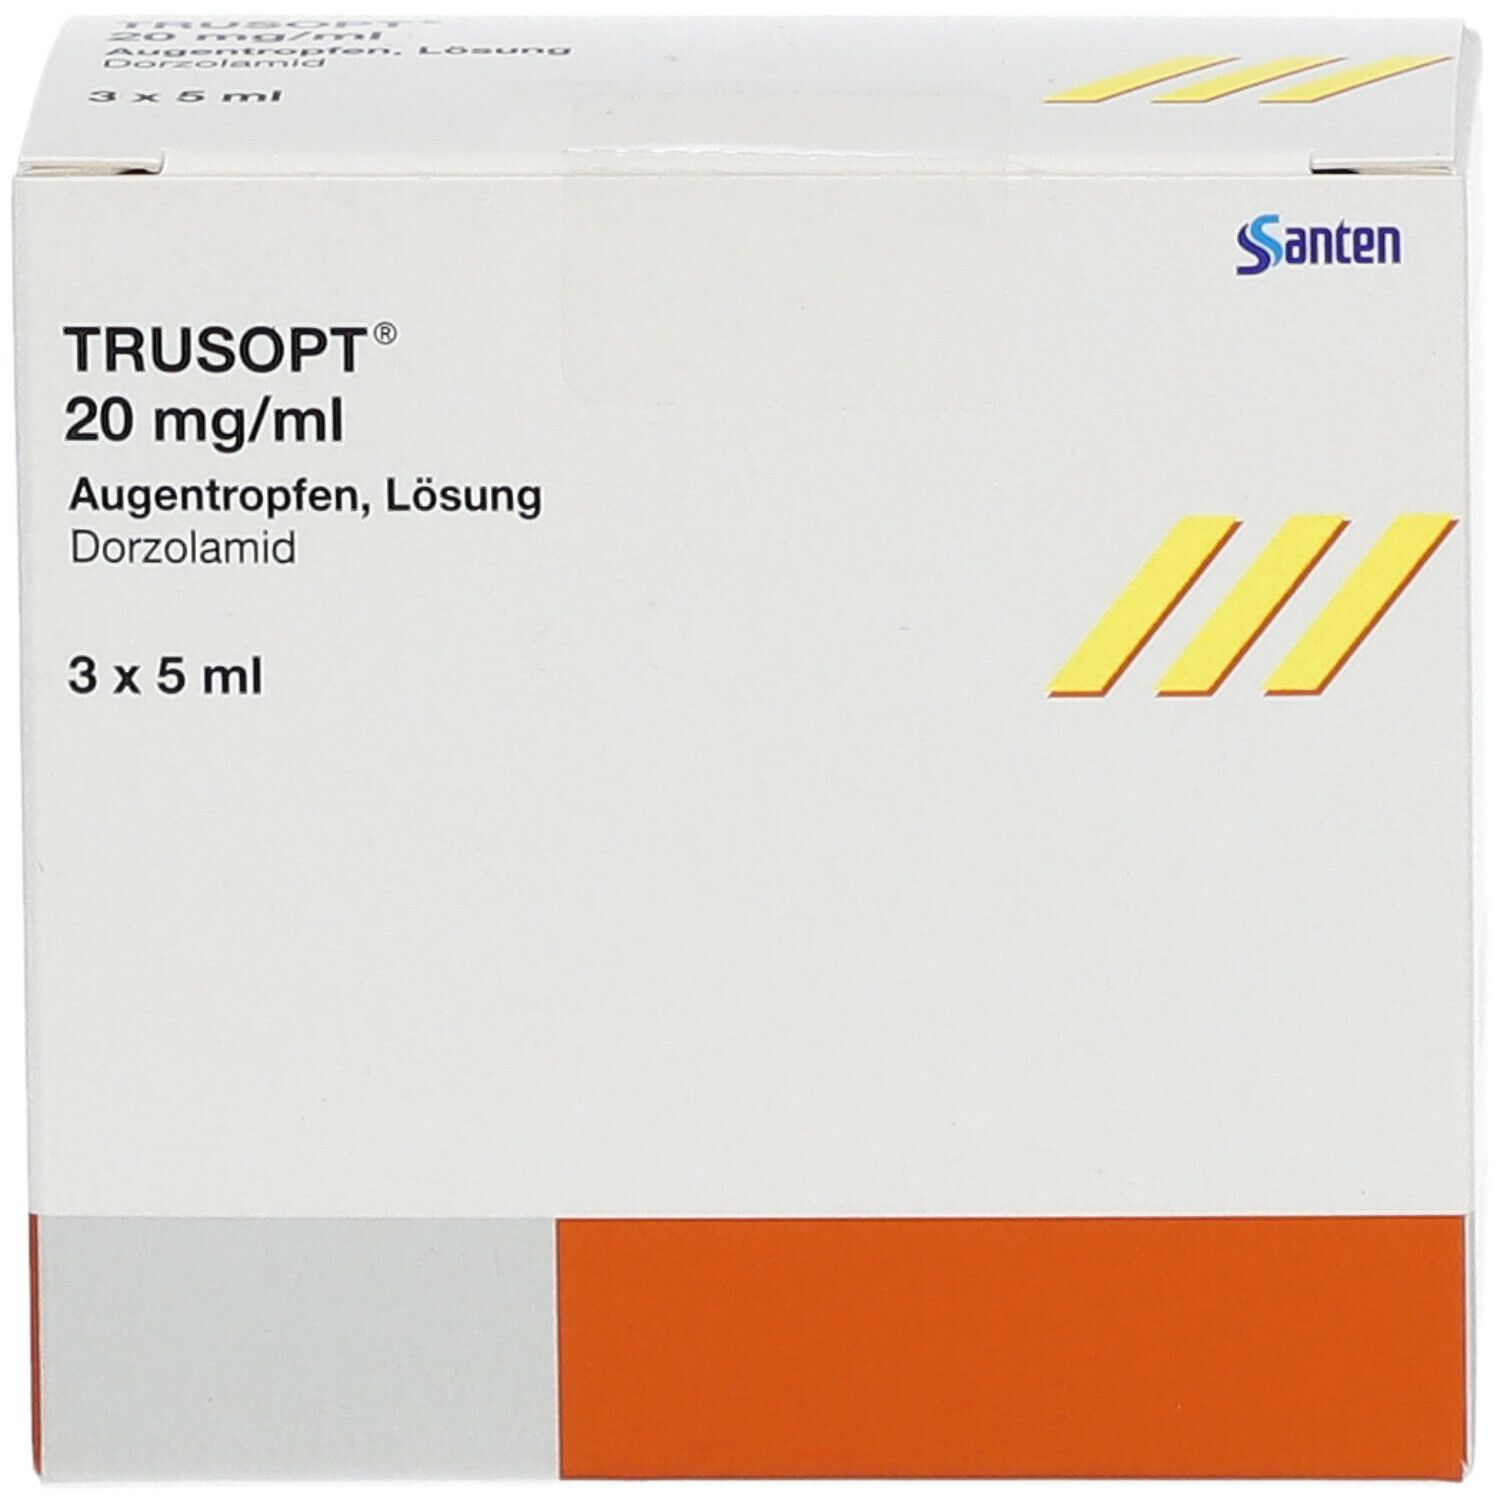 TRUSOPT® 20 mg/ml